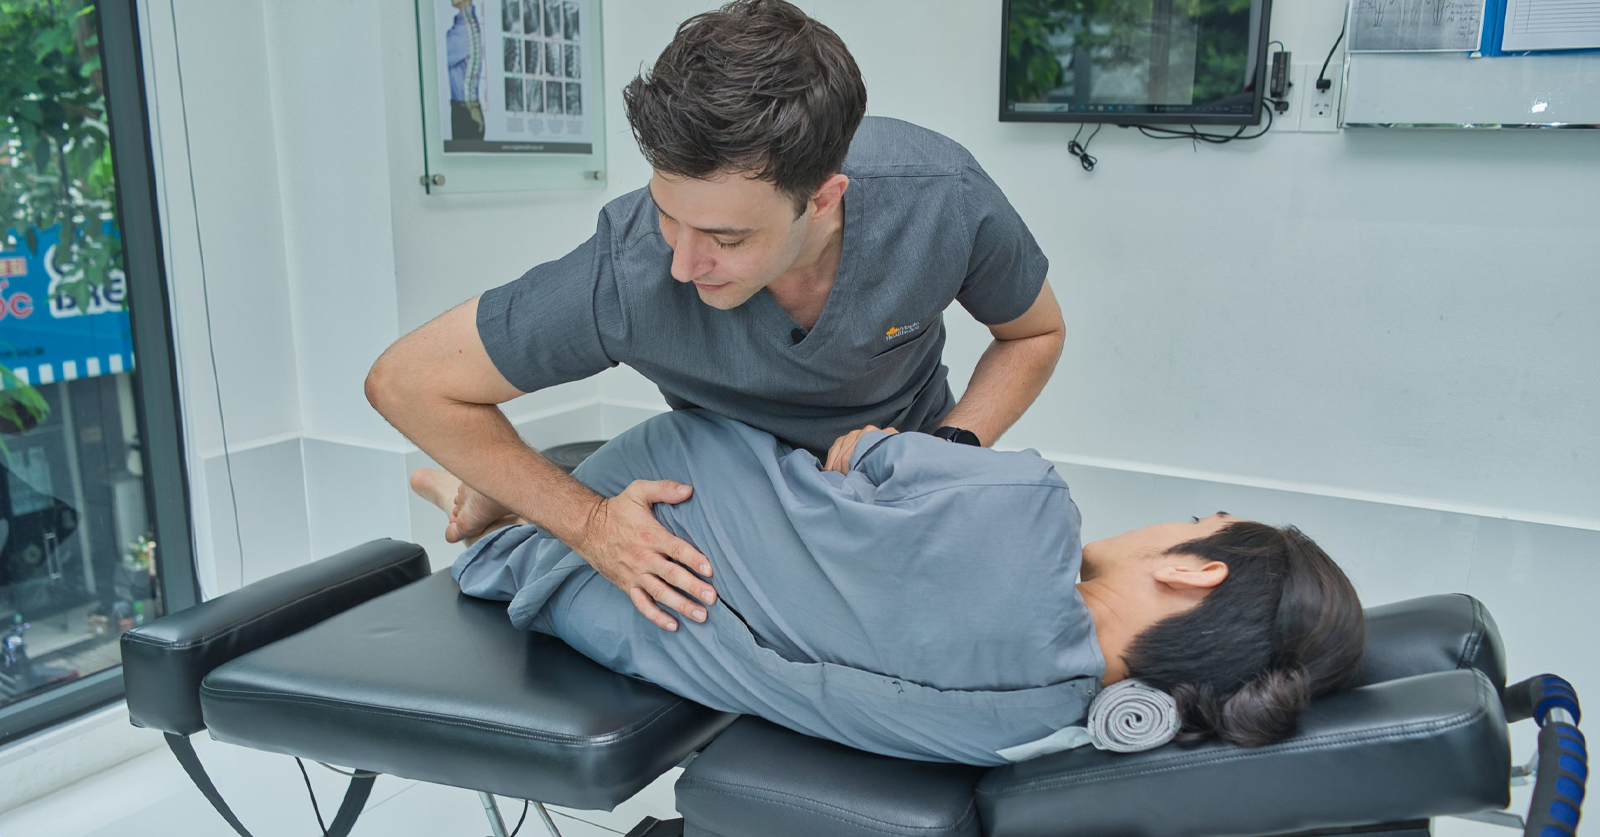  Phương pháp trị liệu chiropractic có an toàn không?